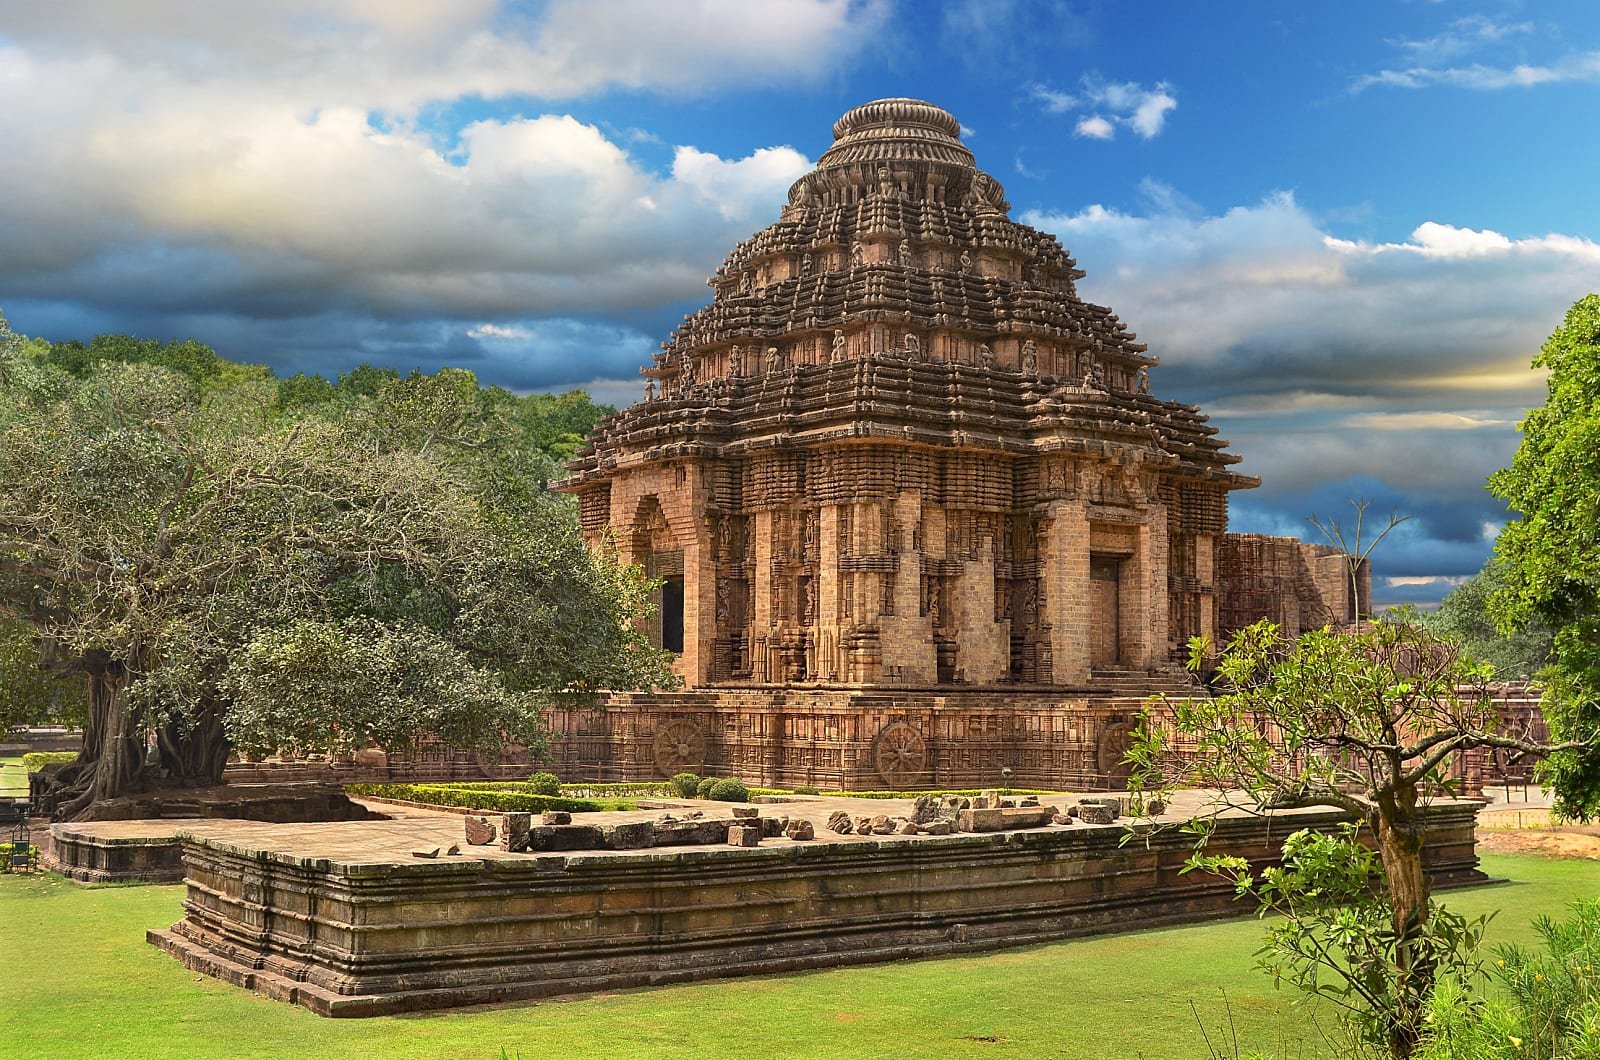 A Brahmin Temple